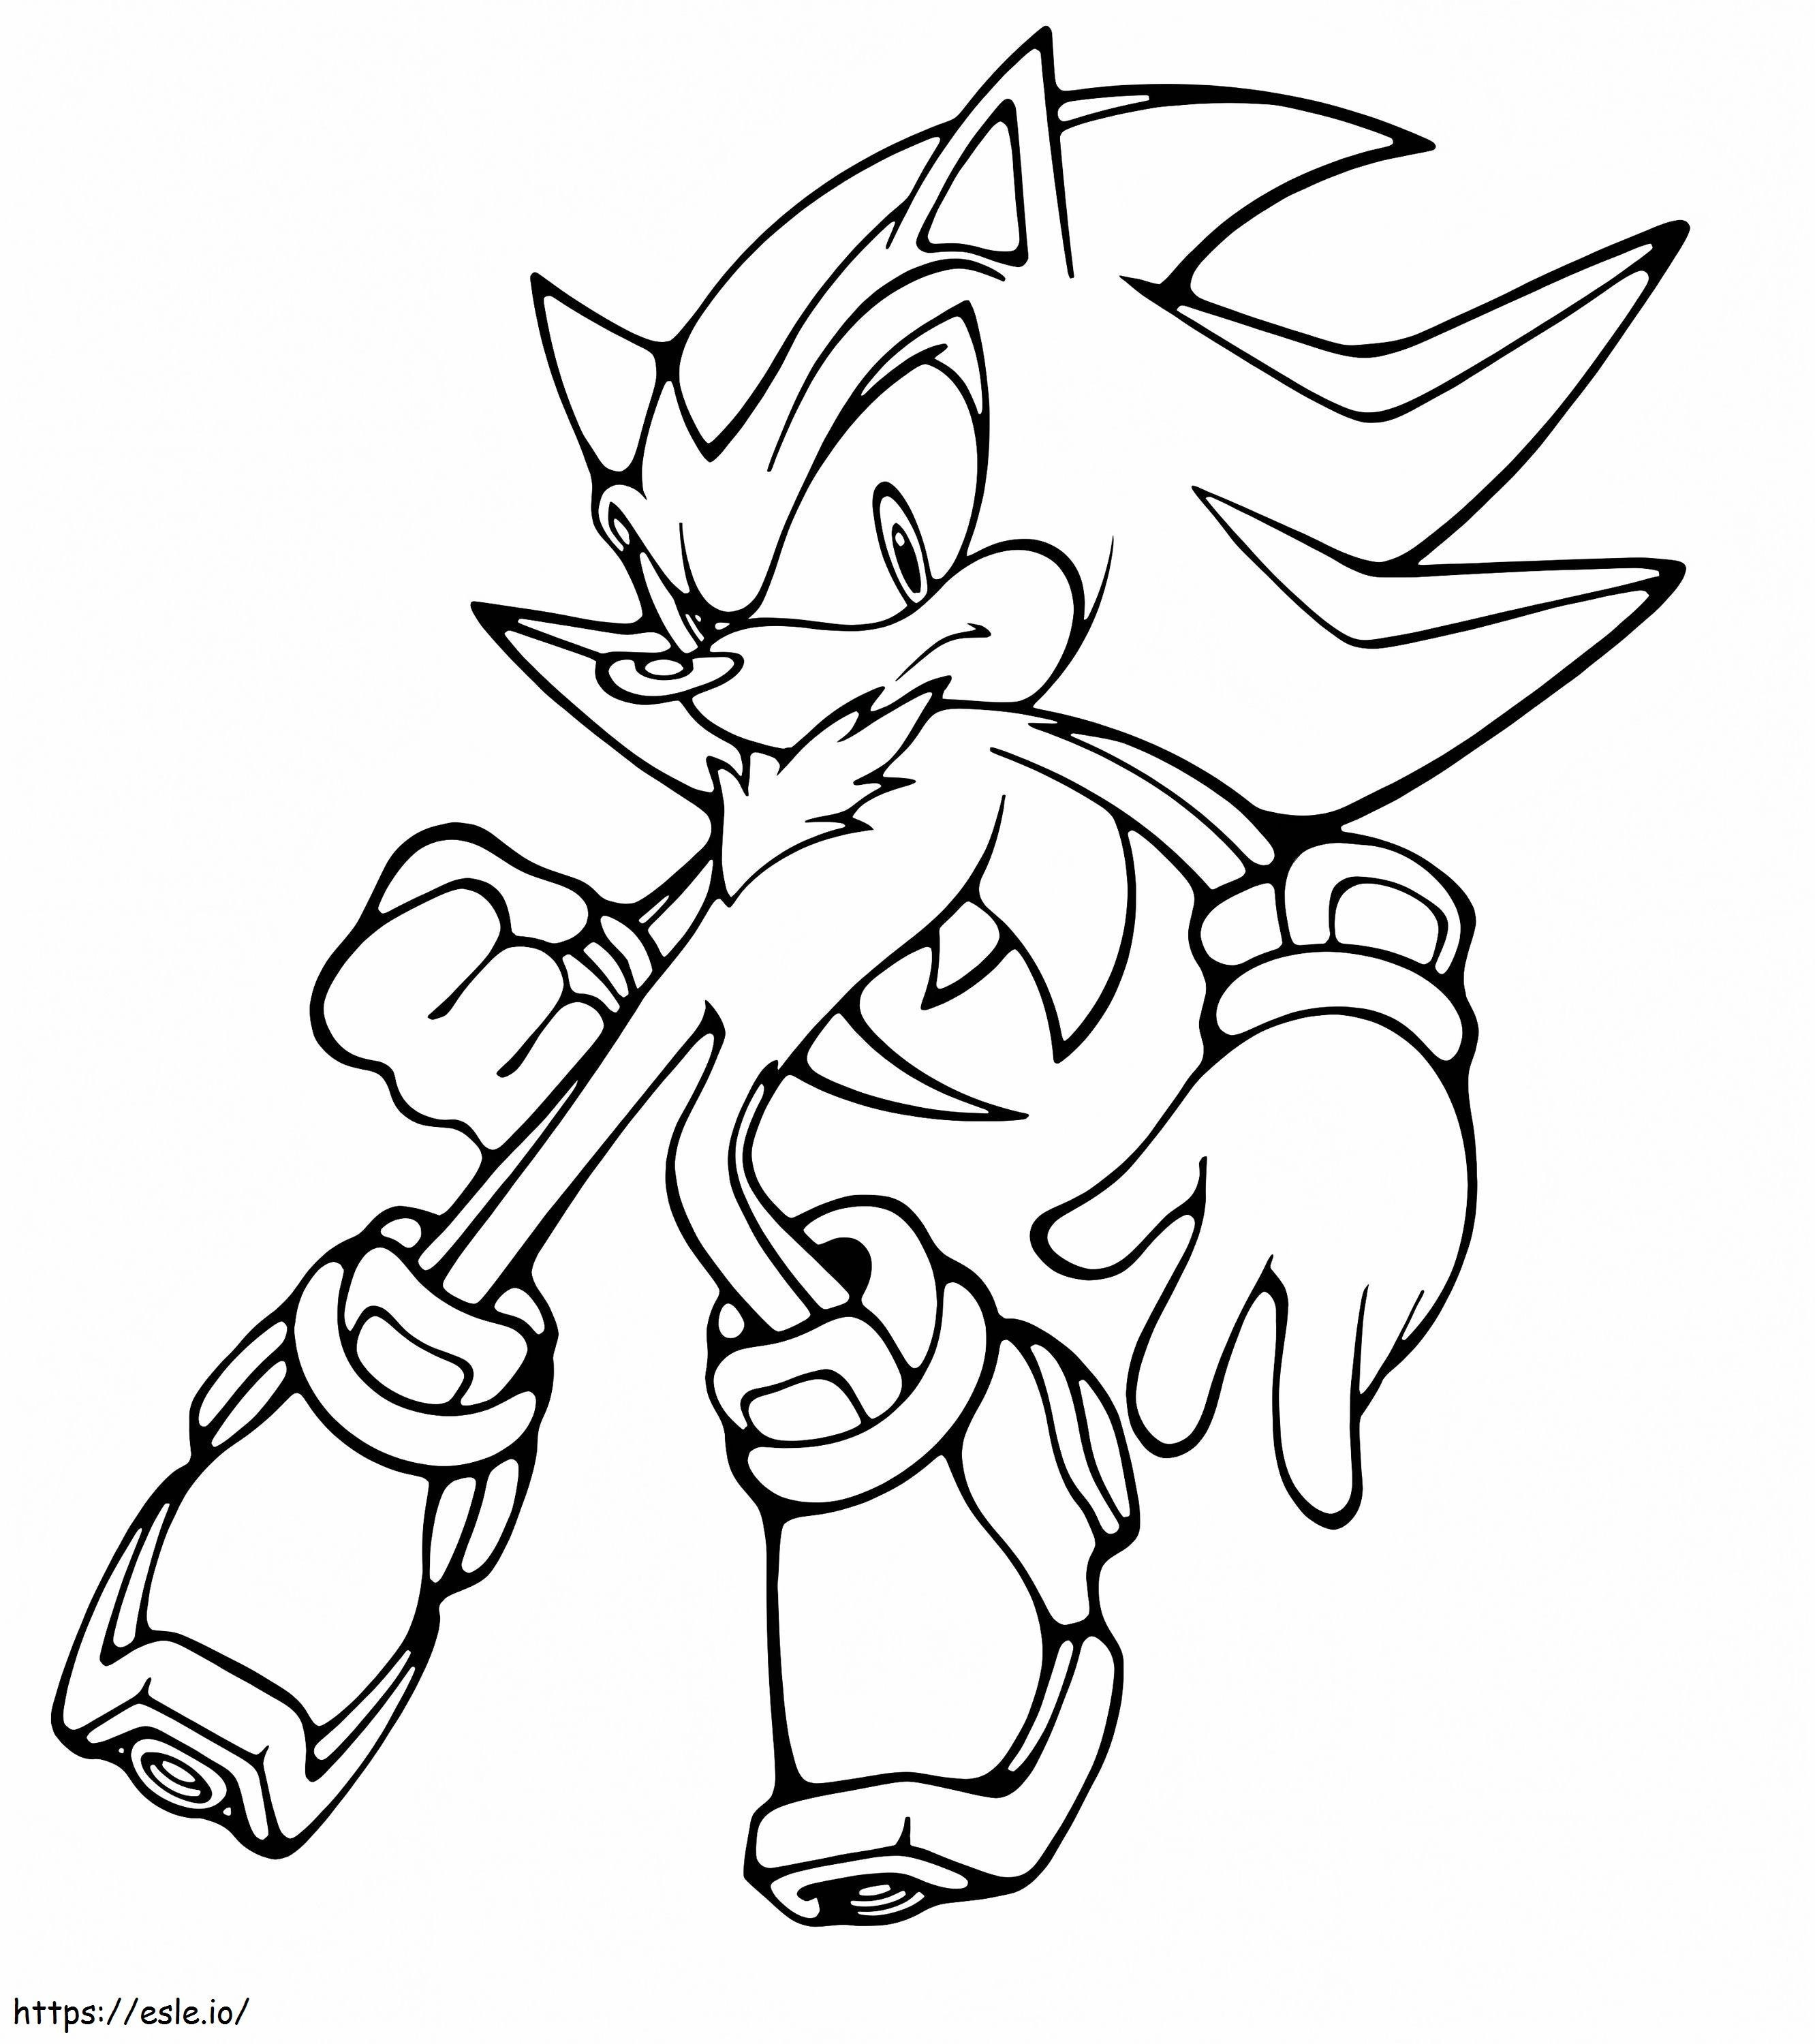 Sombra el erizo de Sonic para colorear